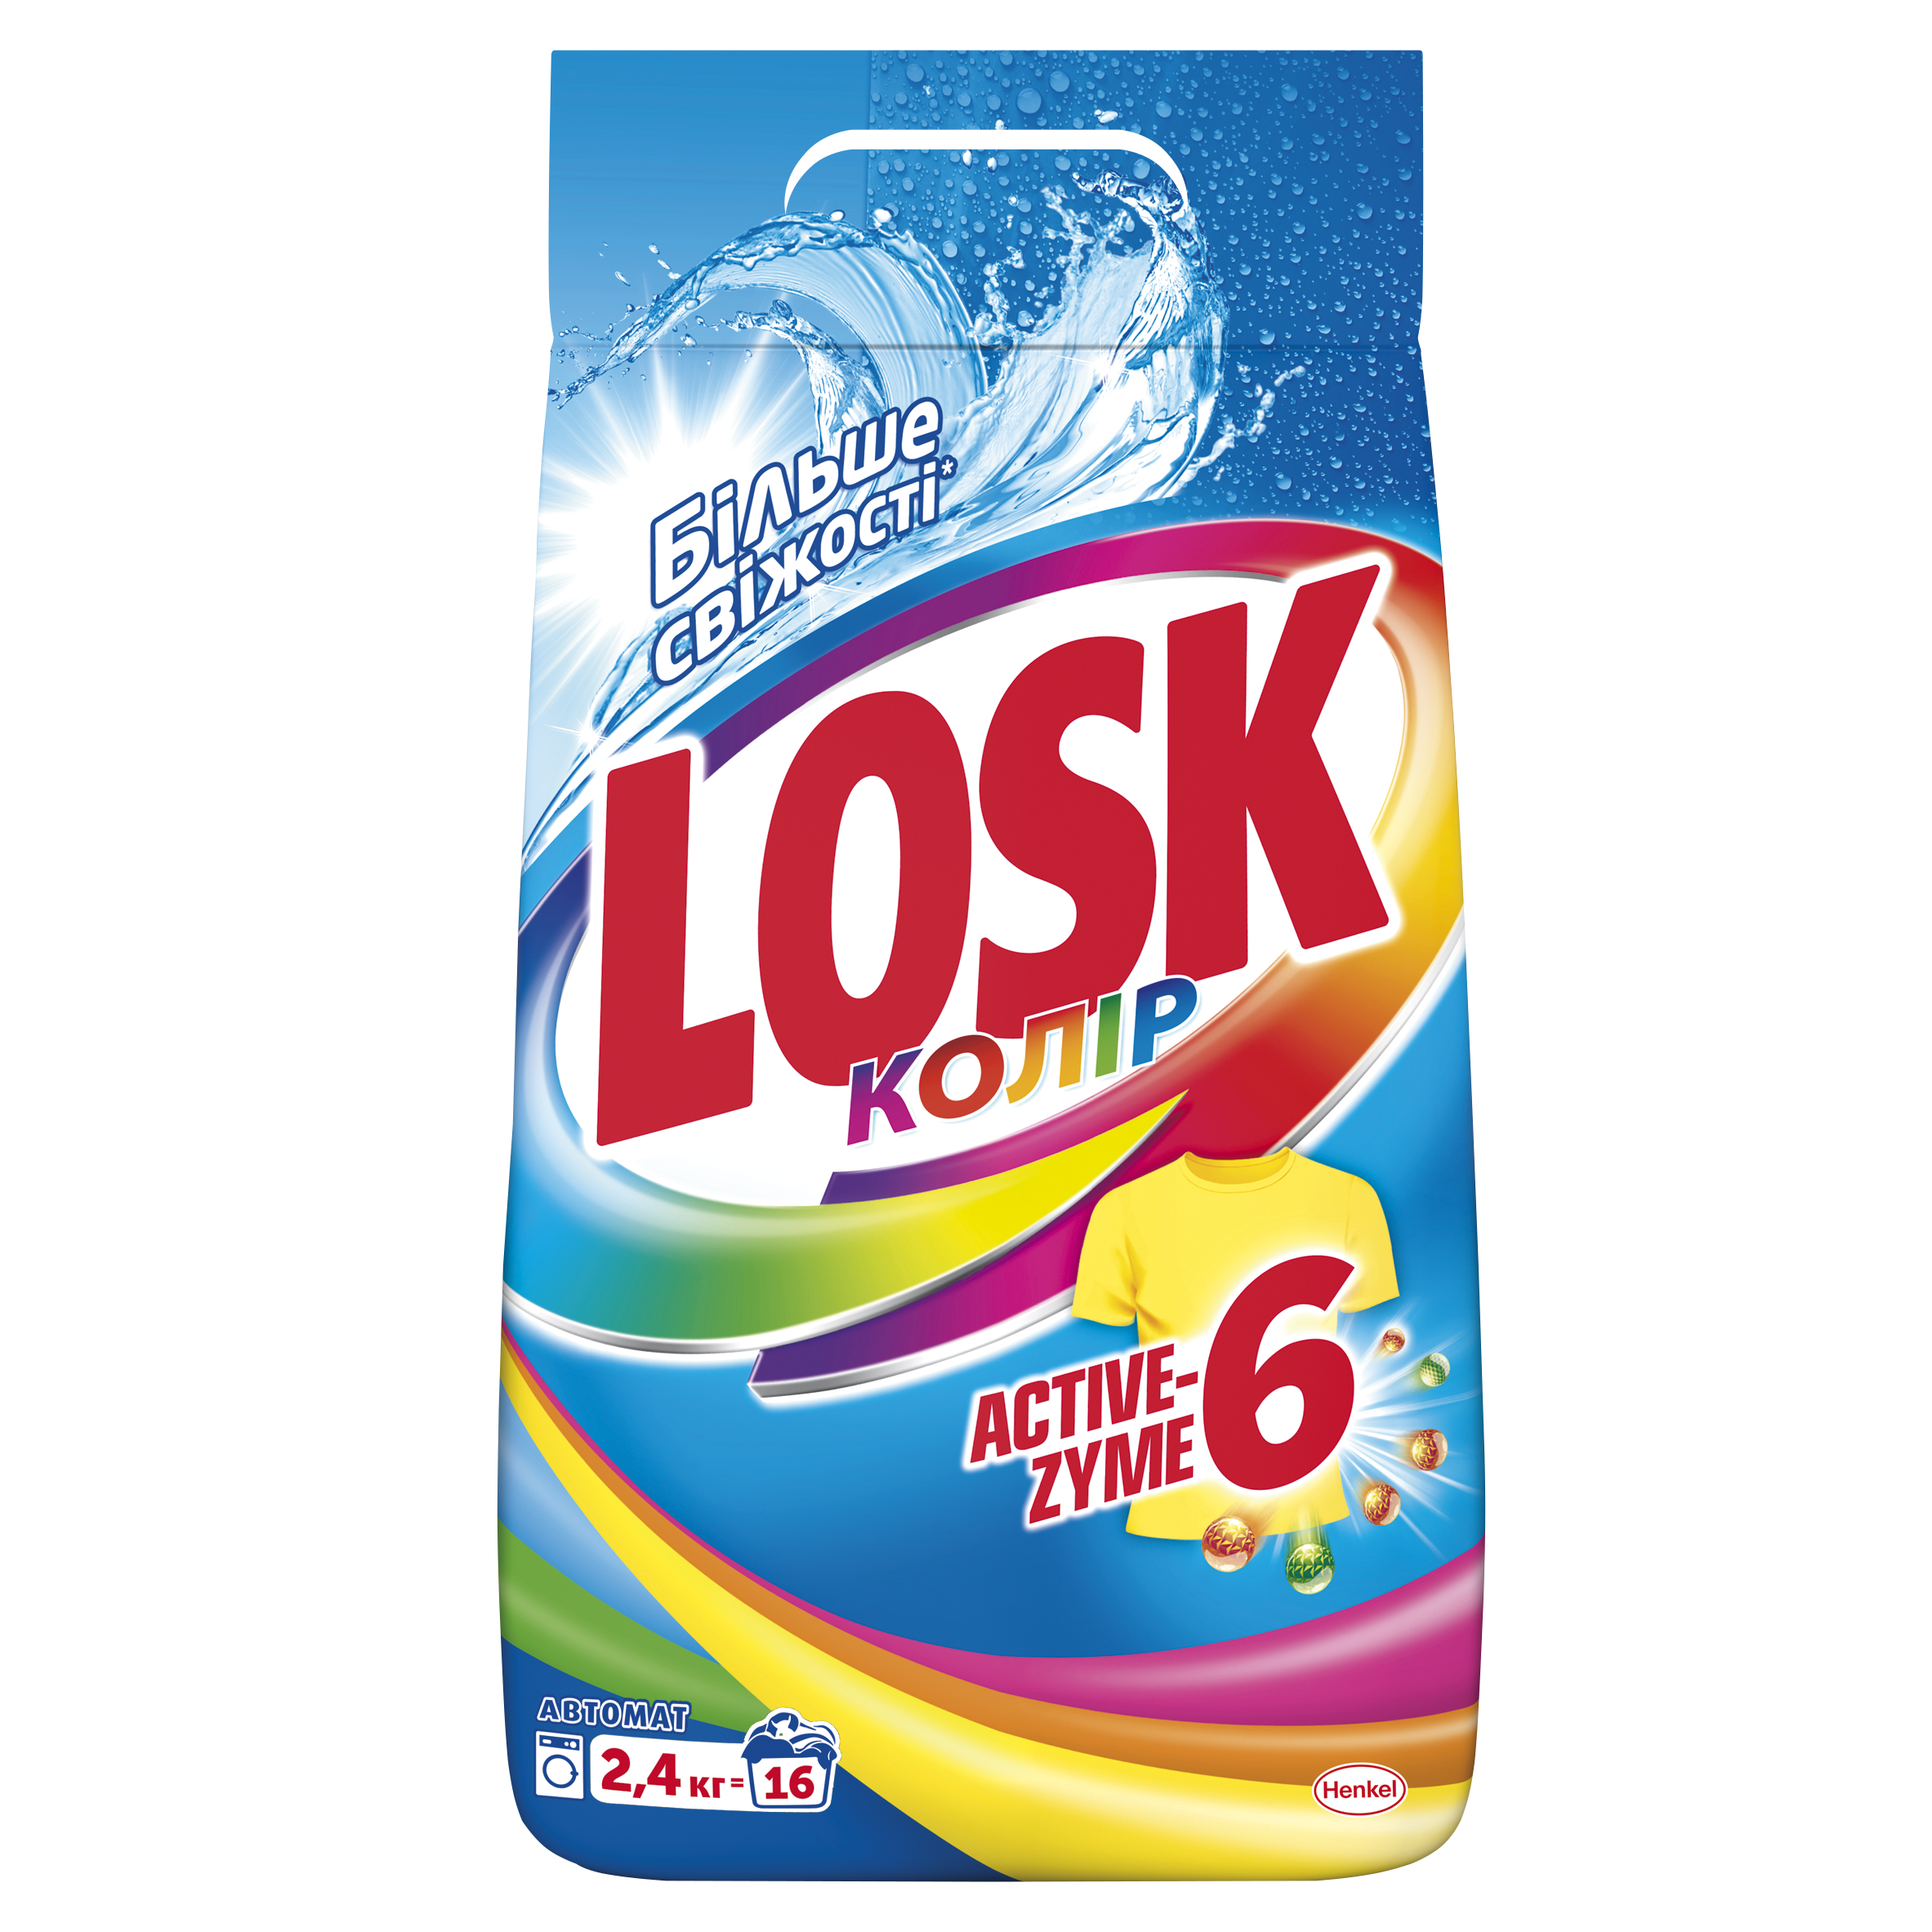 Пральний порошок Losk Color, 2,4 кг (793033) - фото 1